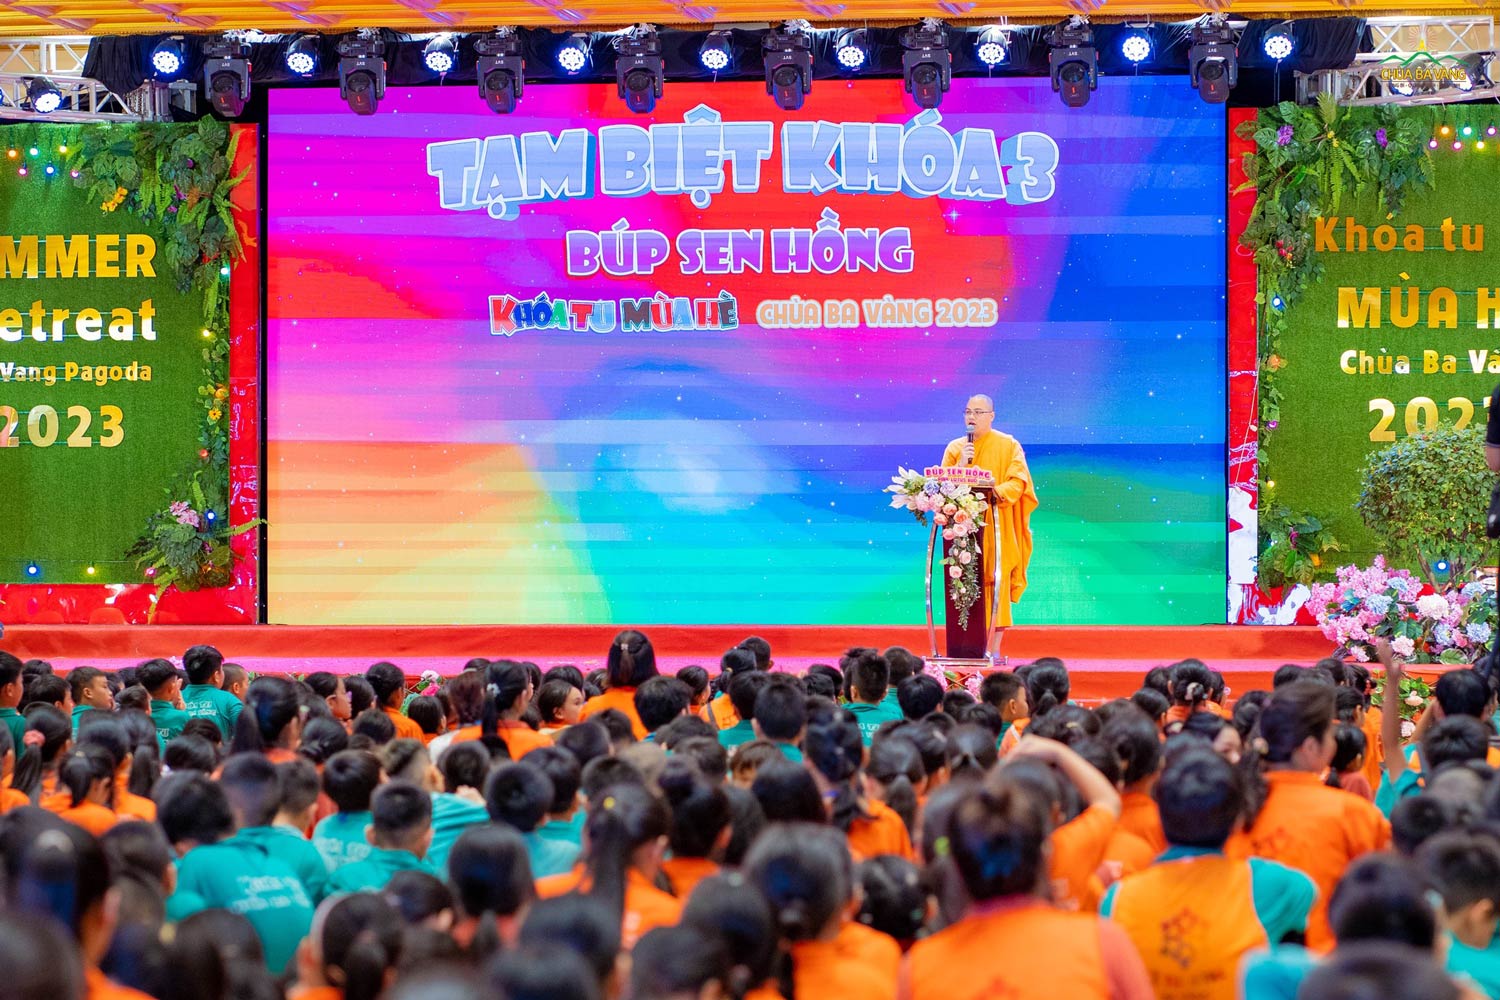 Sư Thầy Thích Trúc Quang Hưng - Phó trưởng Ban thường trực Ban tổ chức khóa tu mùa hè chùa Ba Vàng phát biểu tại chương trình